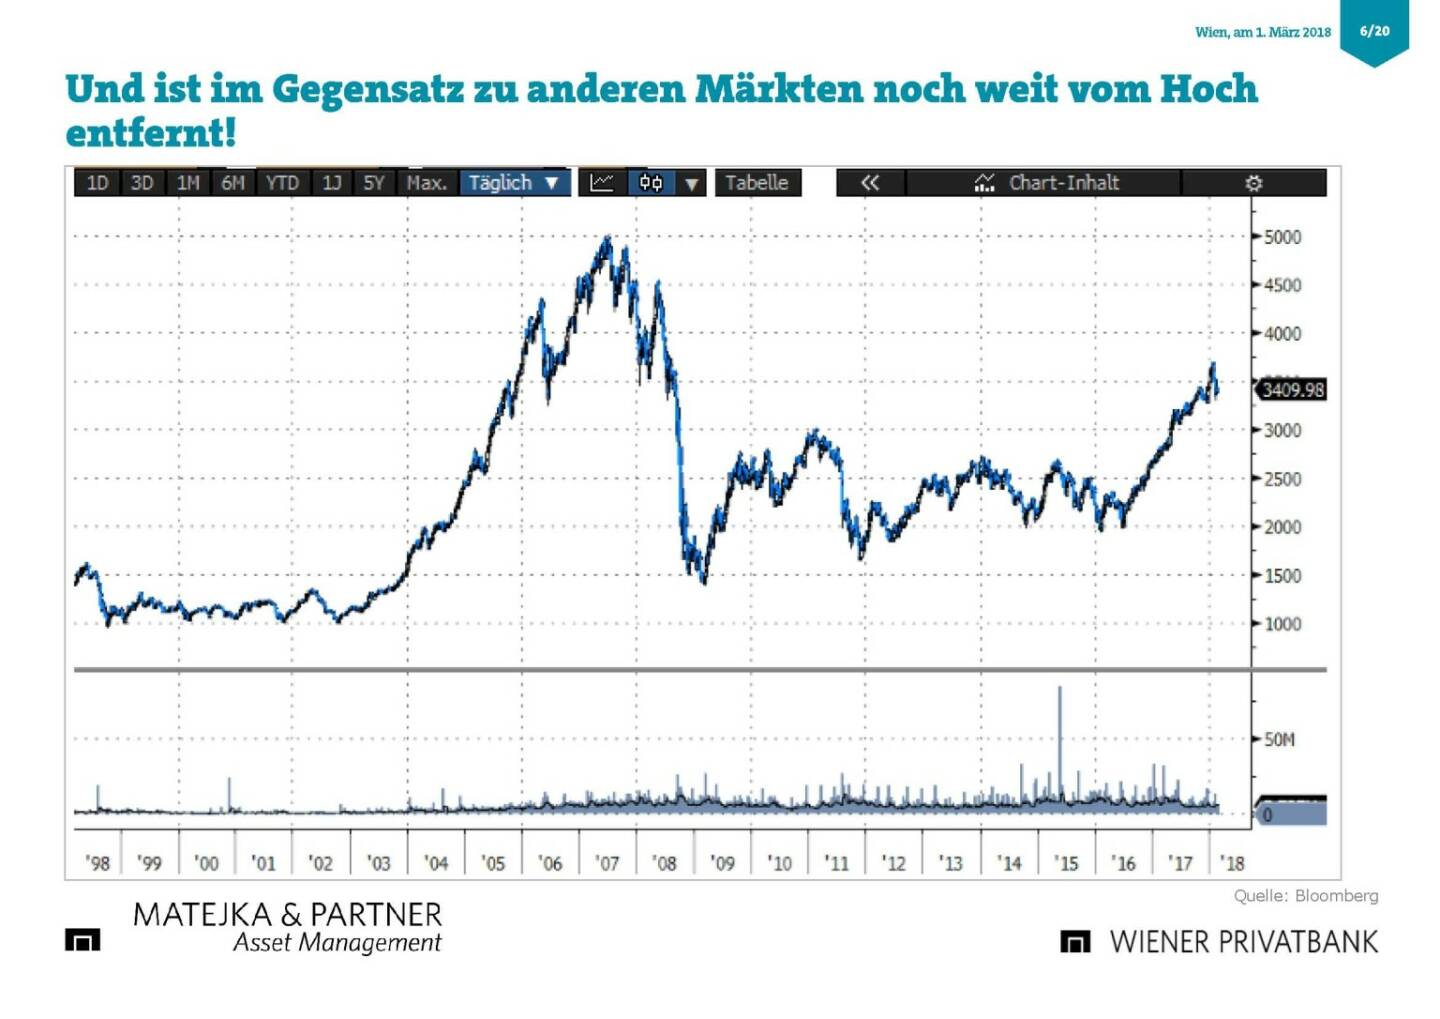 Präsentation Wiener Privatbank - Börse noch vom Hoch entfernt